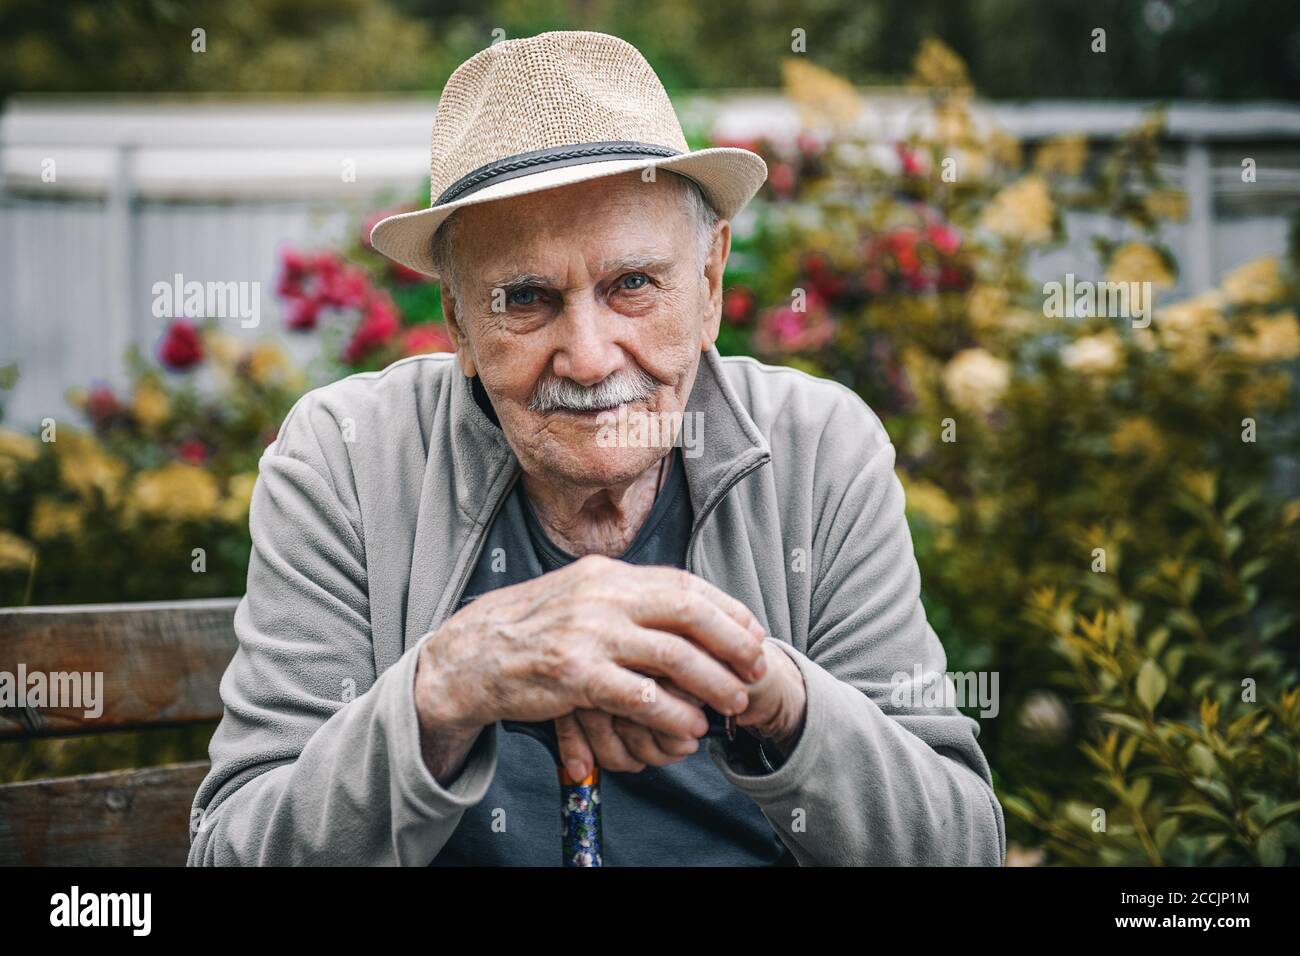 Portrait d'un homme beau de 87 ans souriant et confiant dans un chapeau avec une moustache. Bonne vieillesse active. Portrait d'un homme à l'automne Banque D'Images